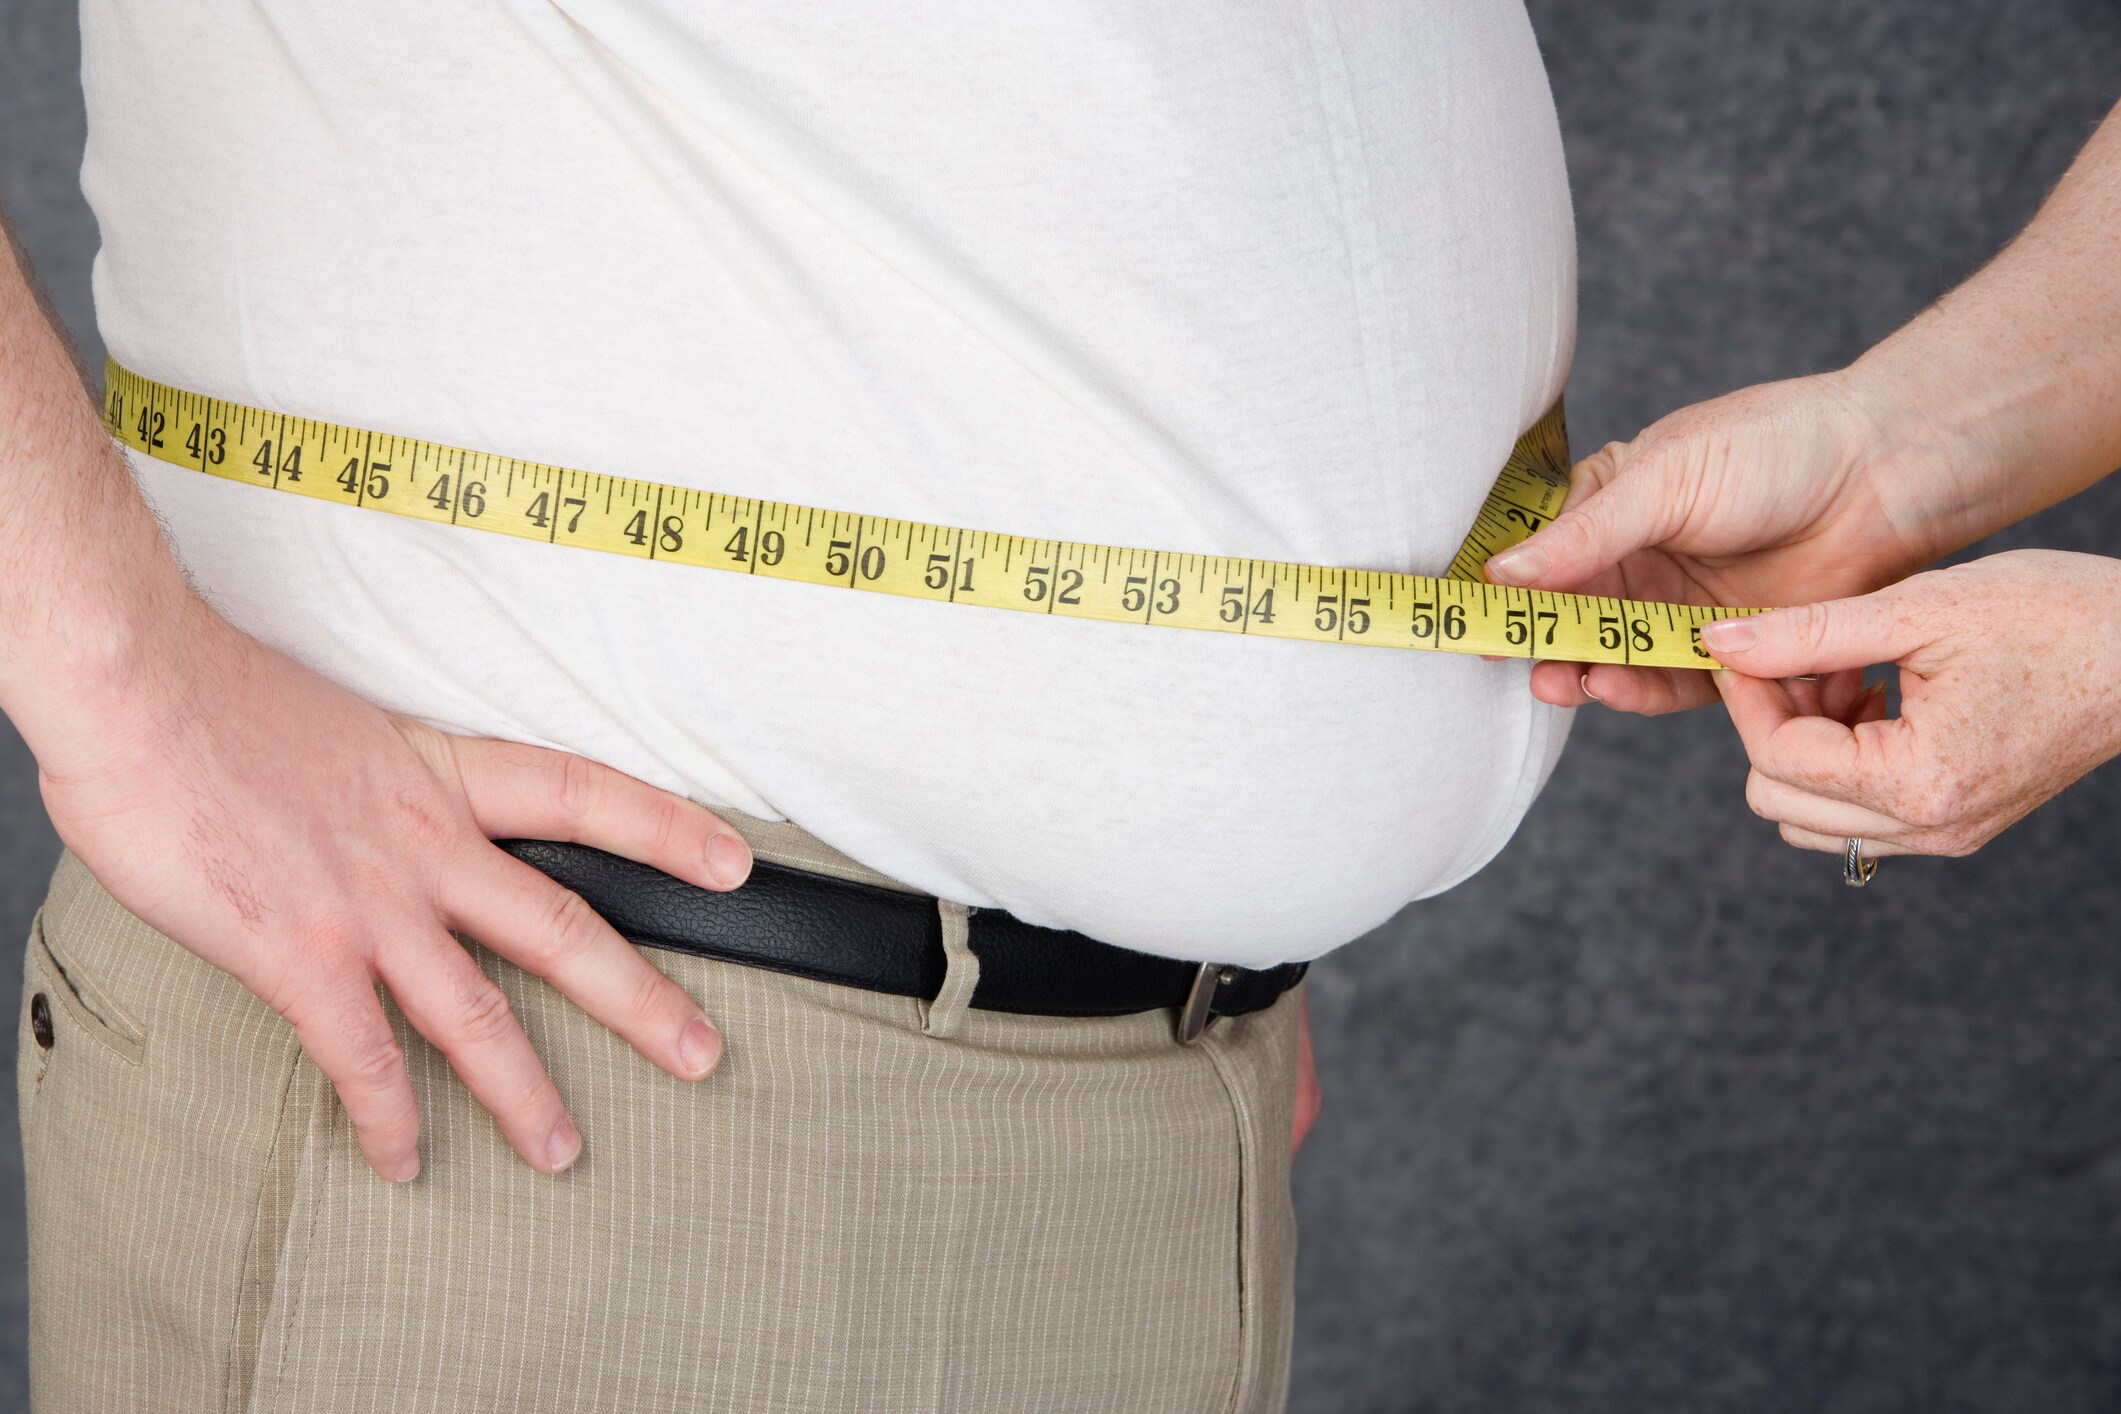 Dieetpil bejubeld omdat ze geen hartkwalen veroorzaakt: "Dit is de oplossing voor obesitas"